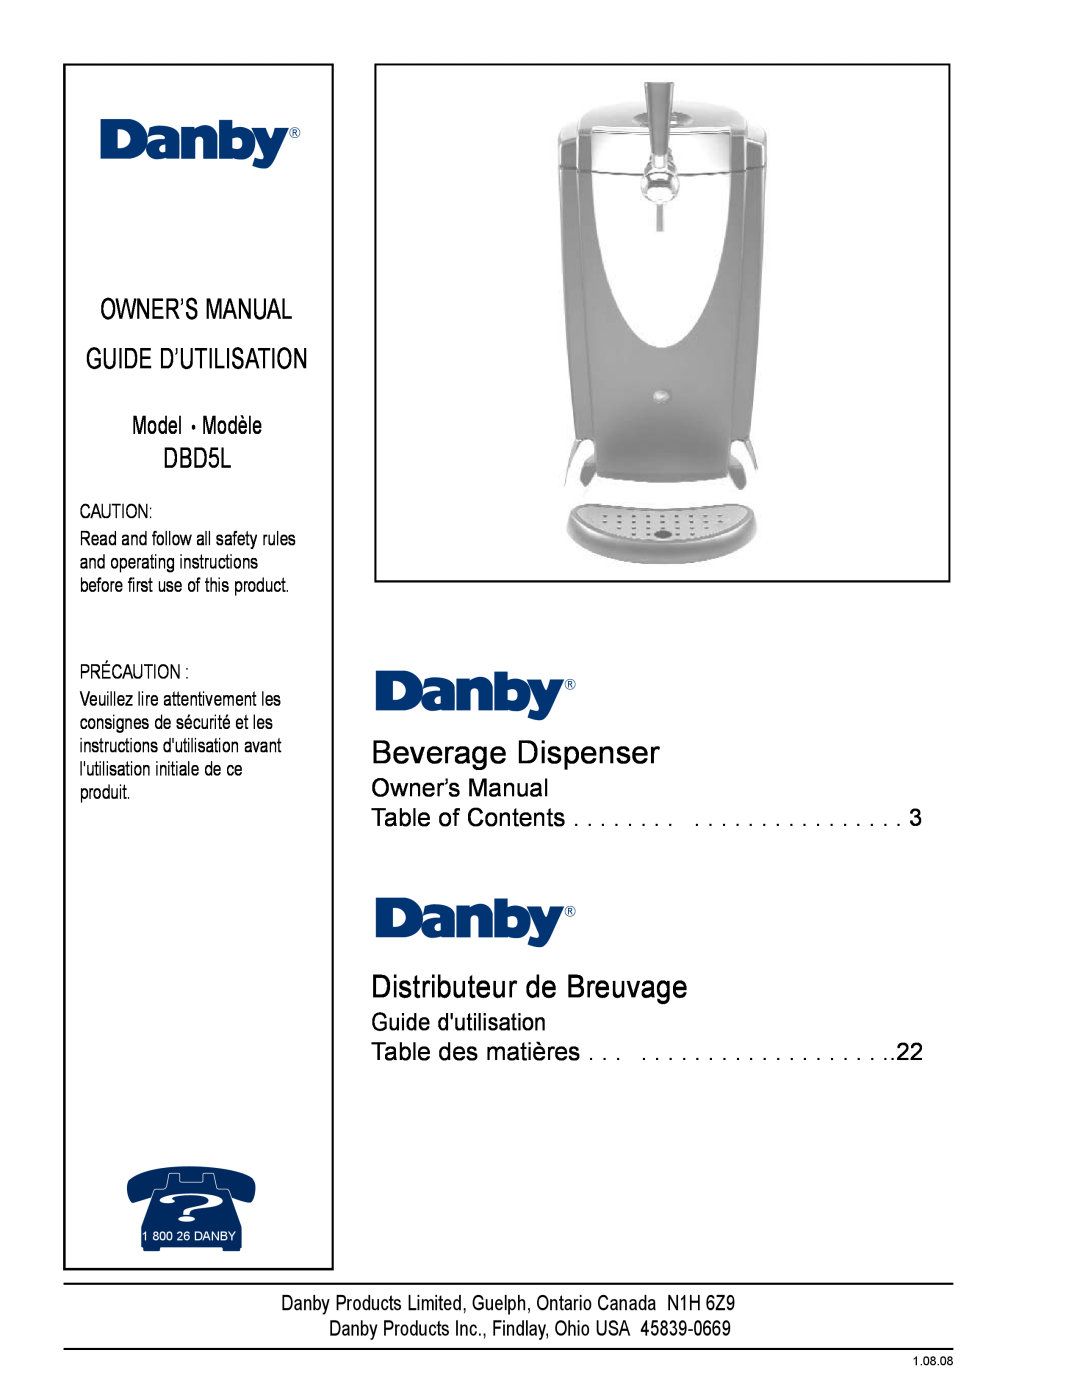 Danby DBD5L owner manual Beverage Dispenser, Distributeur de Breuvage, Model Modèle, Guide dutilisation Table des matières 